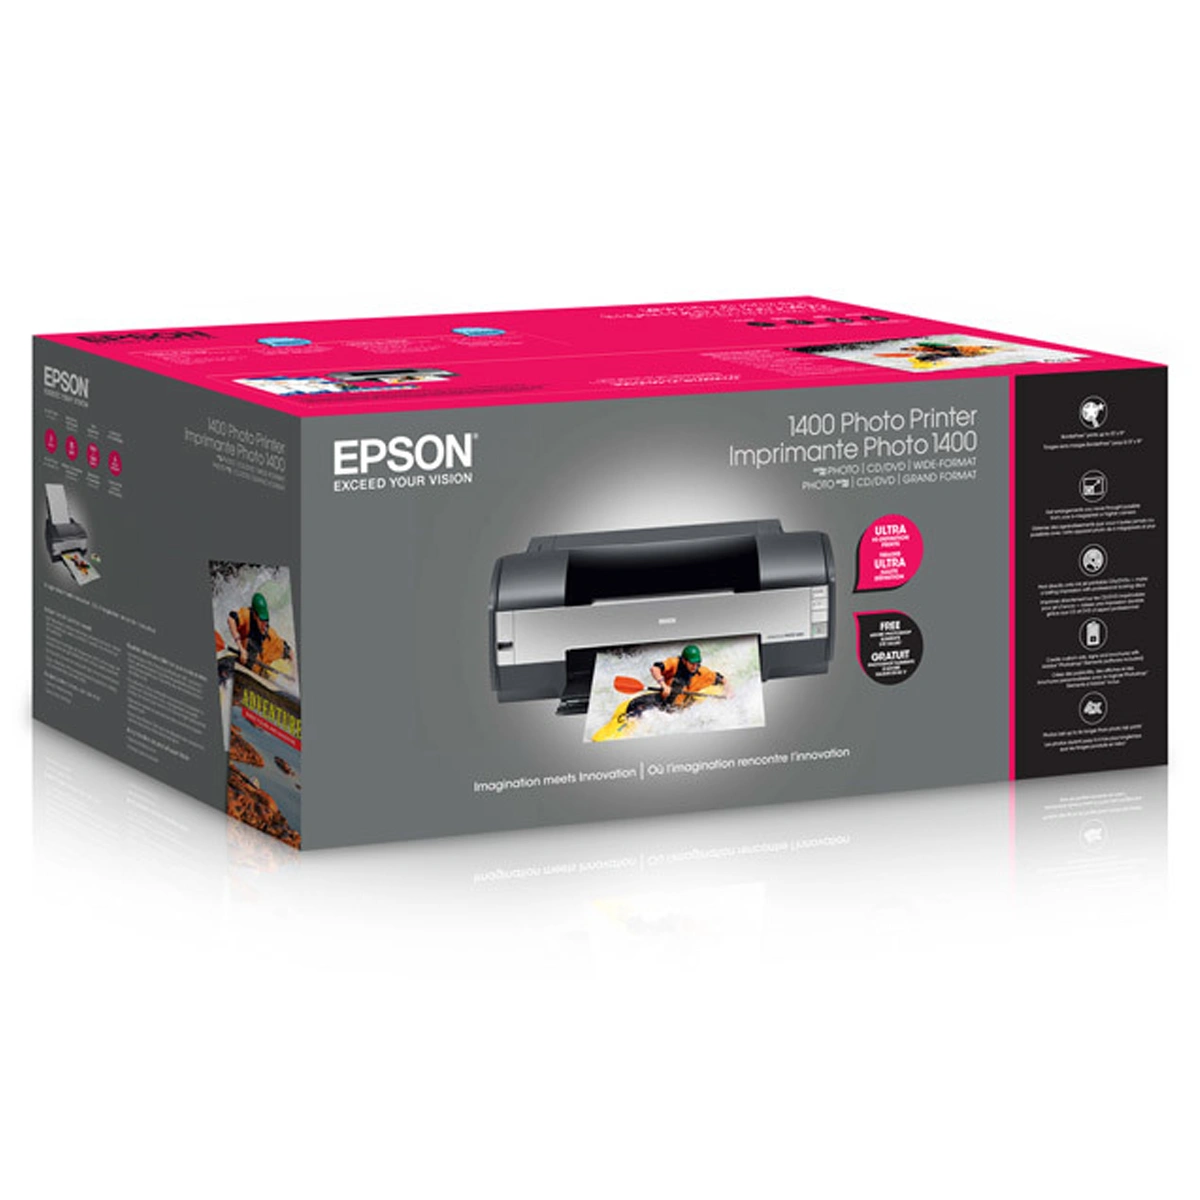 Epson Stylus Photo 1400 Printer Printing Kayaking Photo Over Retail Box